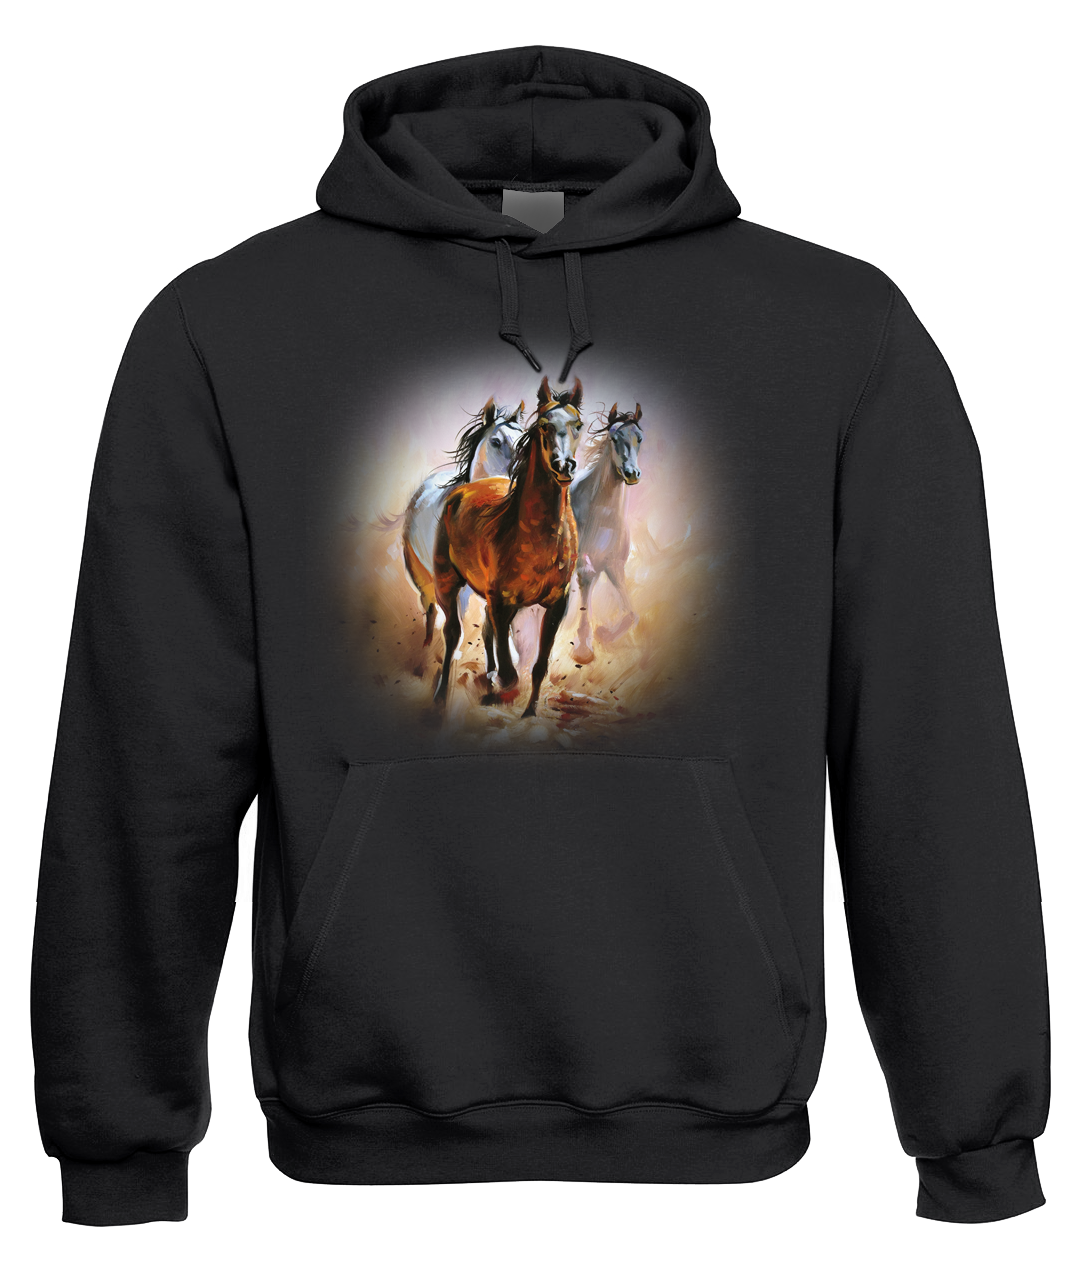 Mikina s koněm - Malované koně Velikost: M, Barva: Černá